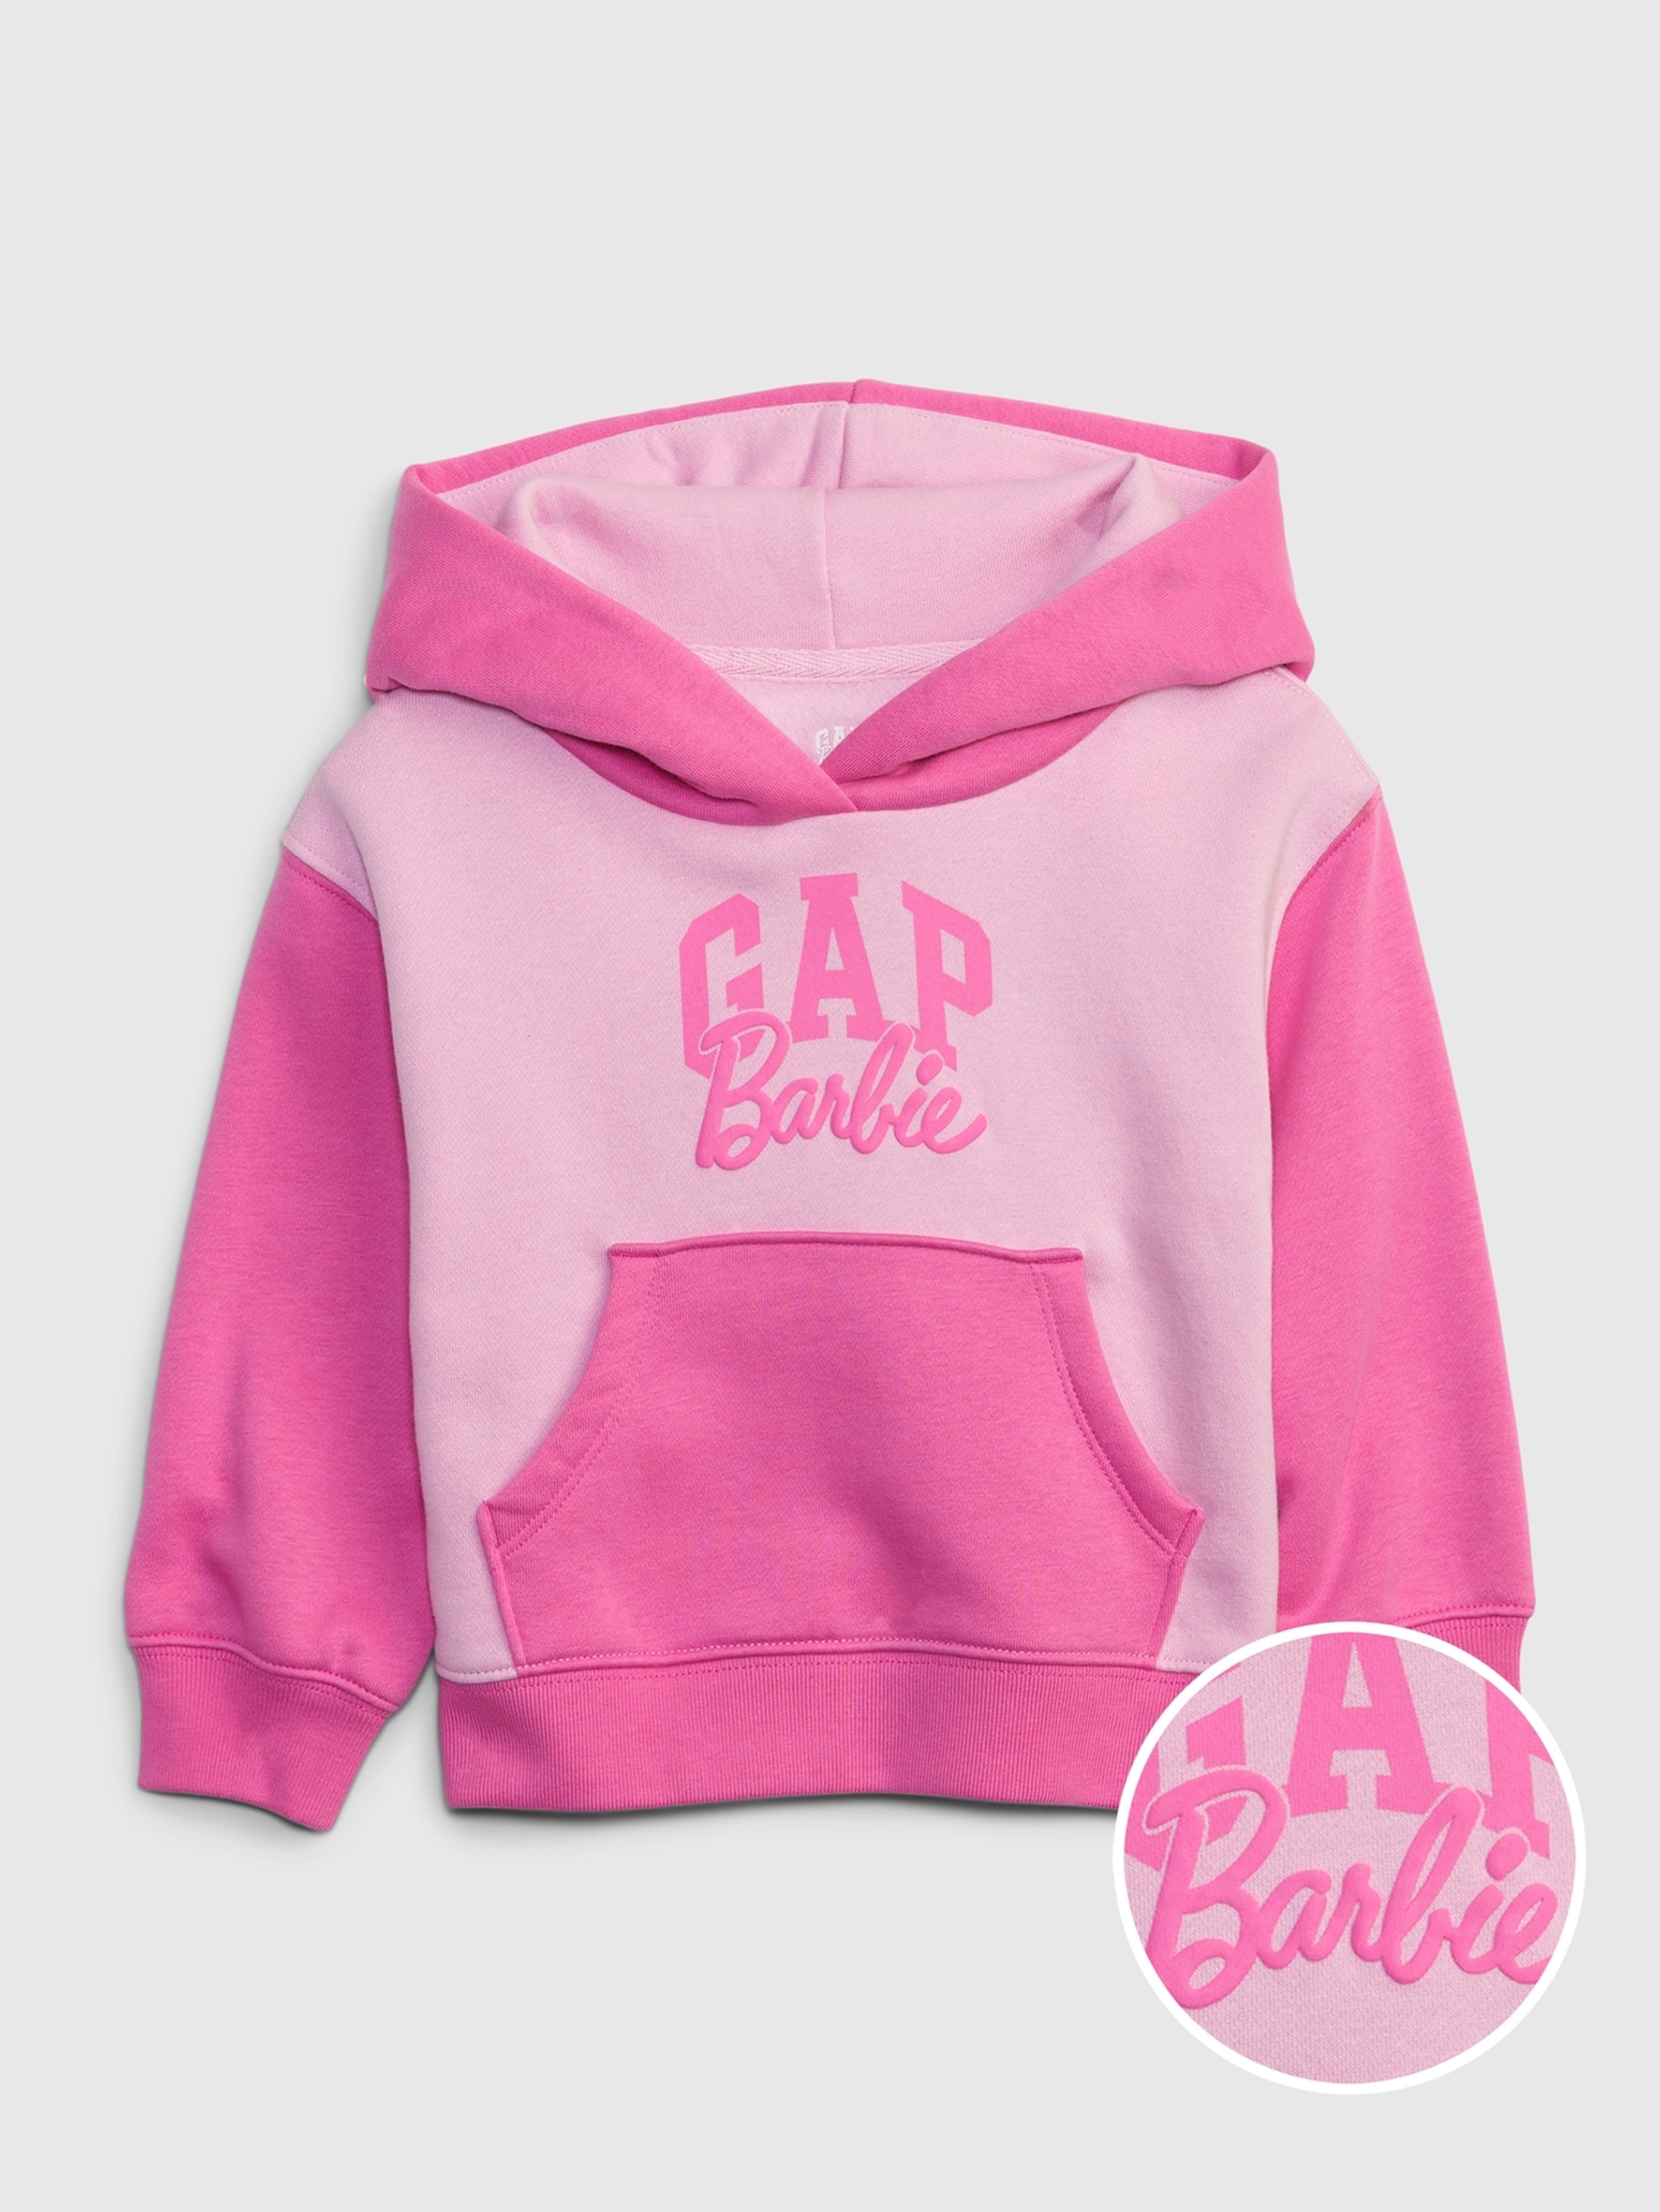 Kinder-Sweatshirt Gap × Barbie™